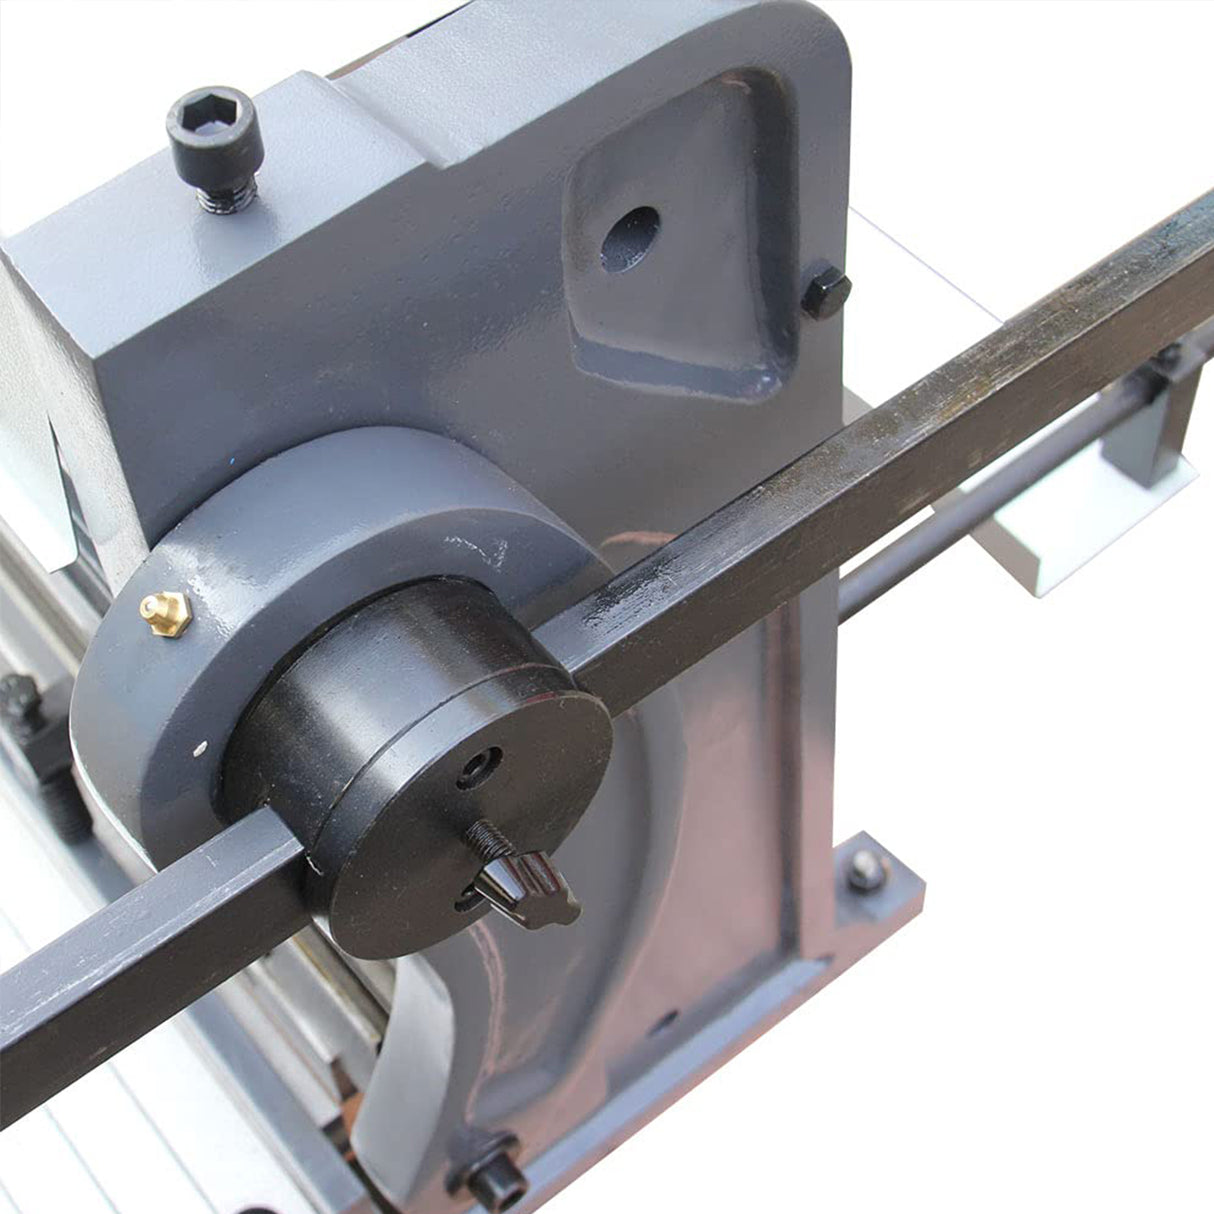 KANG Industrial 3-IN-1/5216, Sheet Metal Brake, 1.5mm Shear Brake Roll Combination, 1320mm Sheet Metal Brakes, Shears and Slip Roll Machine